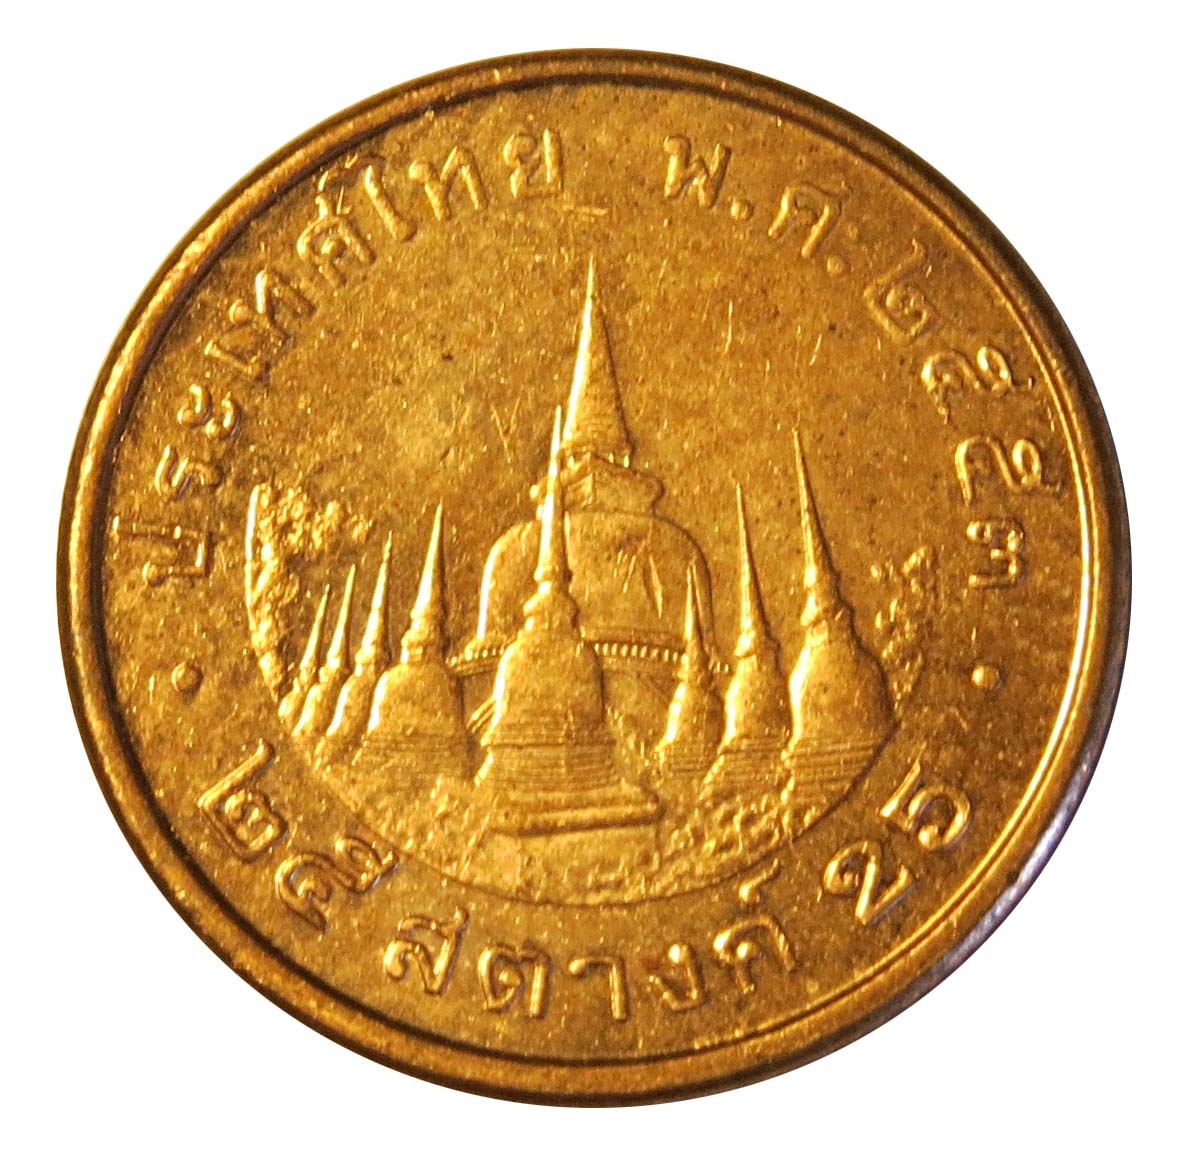 монеты тайланда